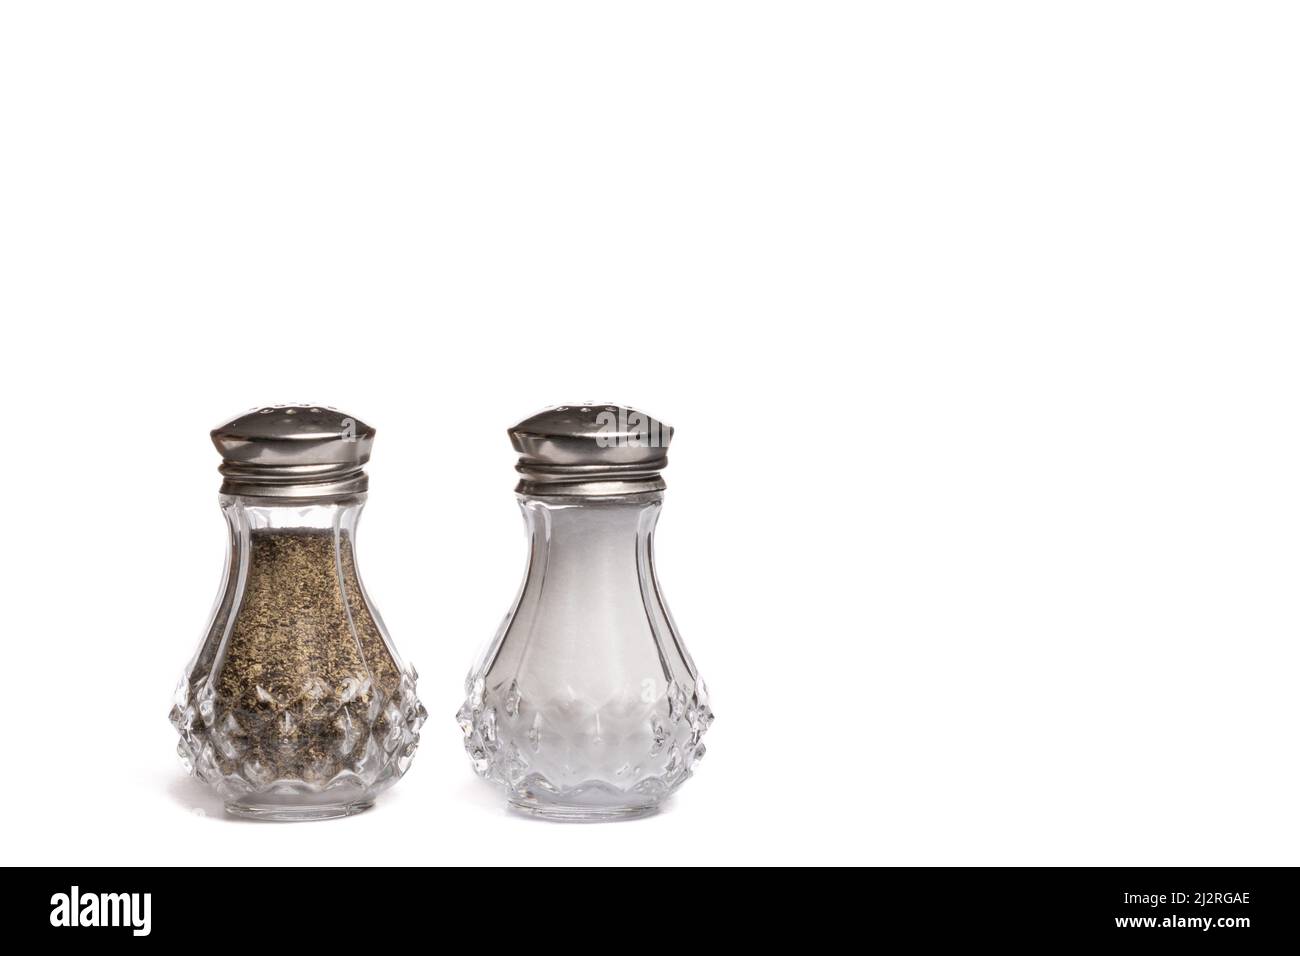 Agitatori con sale e pepe in vetro con coperchi in metallo argento su sfondo bianco con spazio di copia Foto Stock